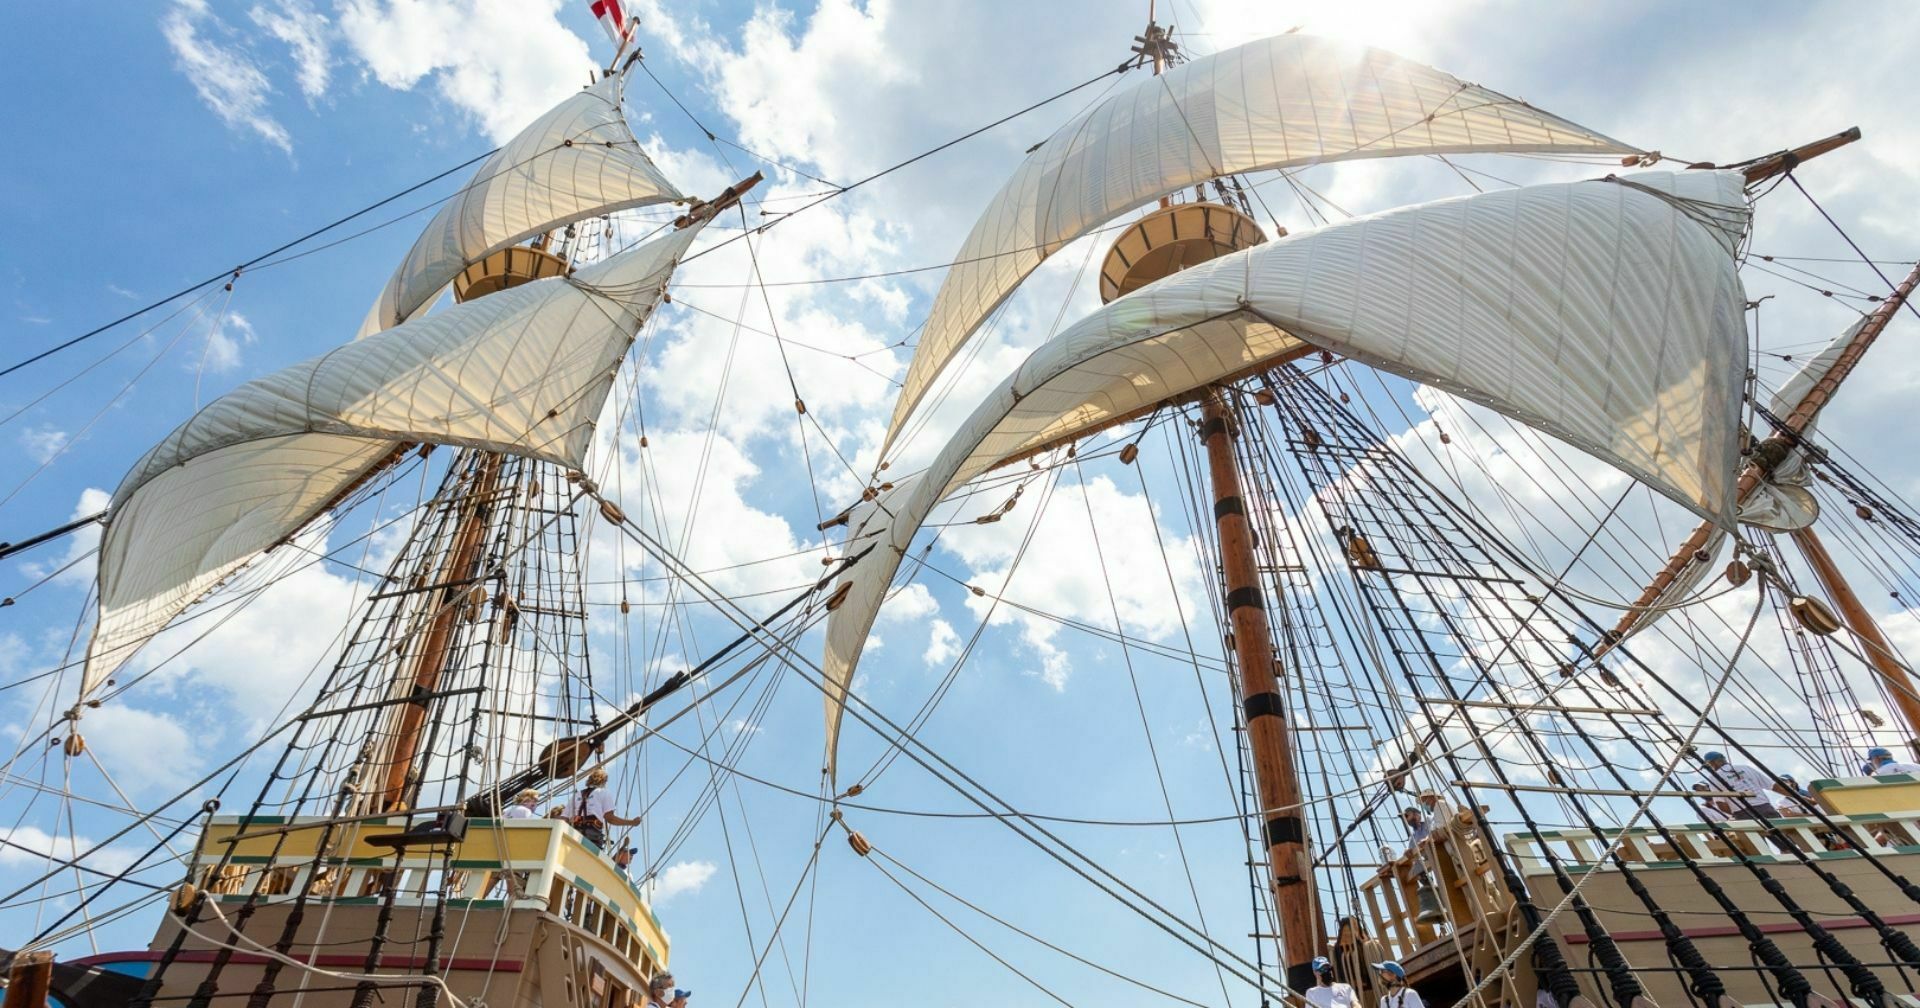 Mayflower full sails